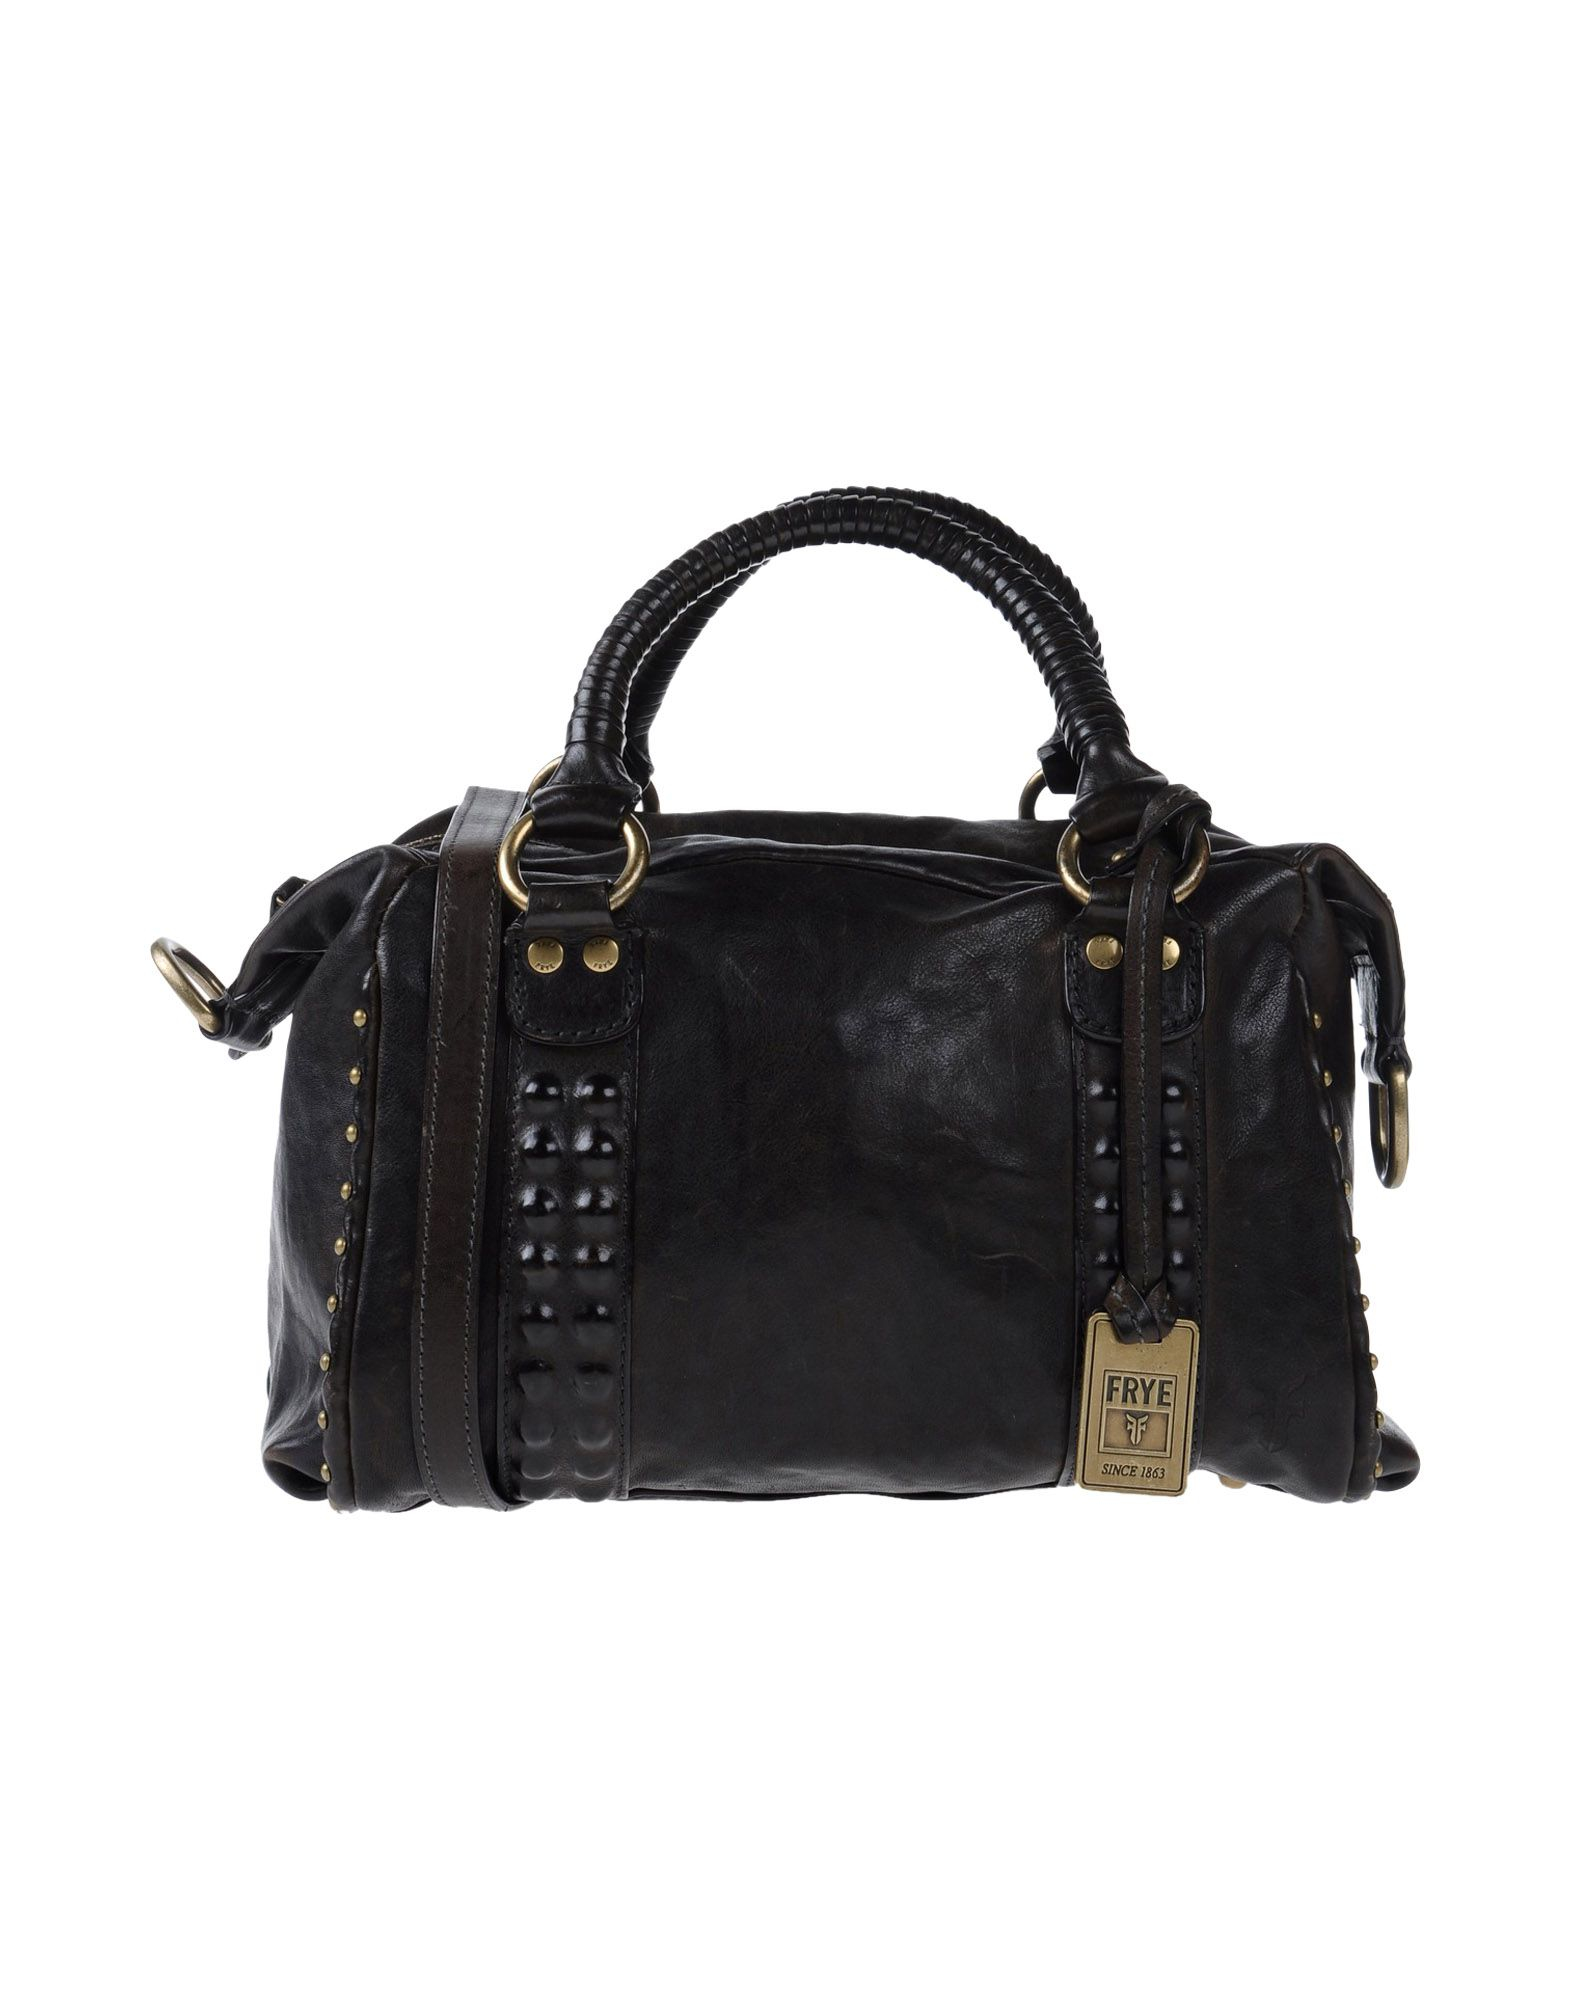 Frye Leather Handbag in Dark Brown (Black) - Lyst